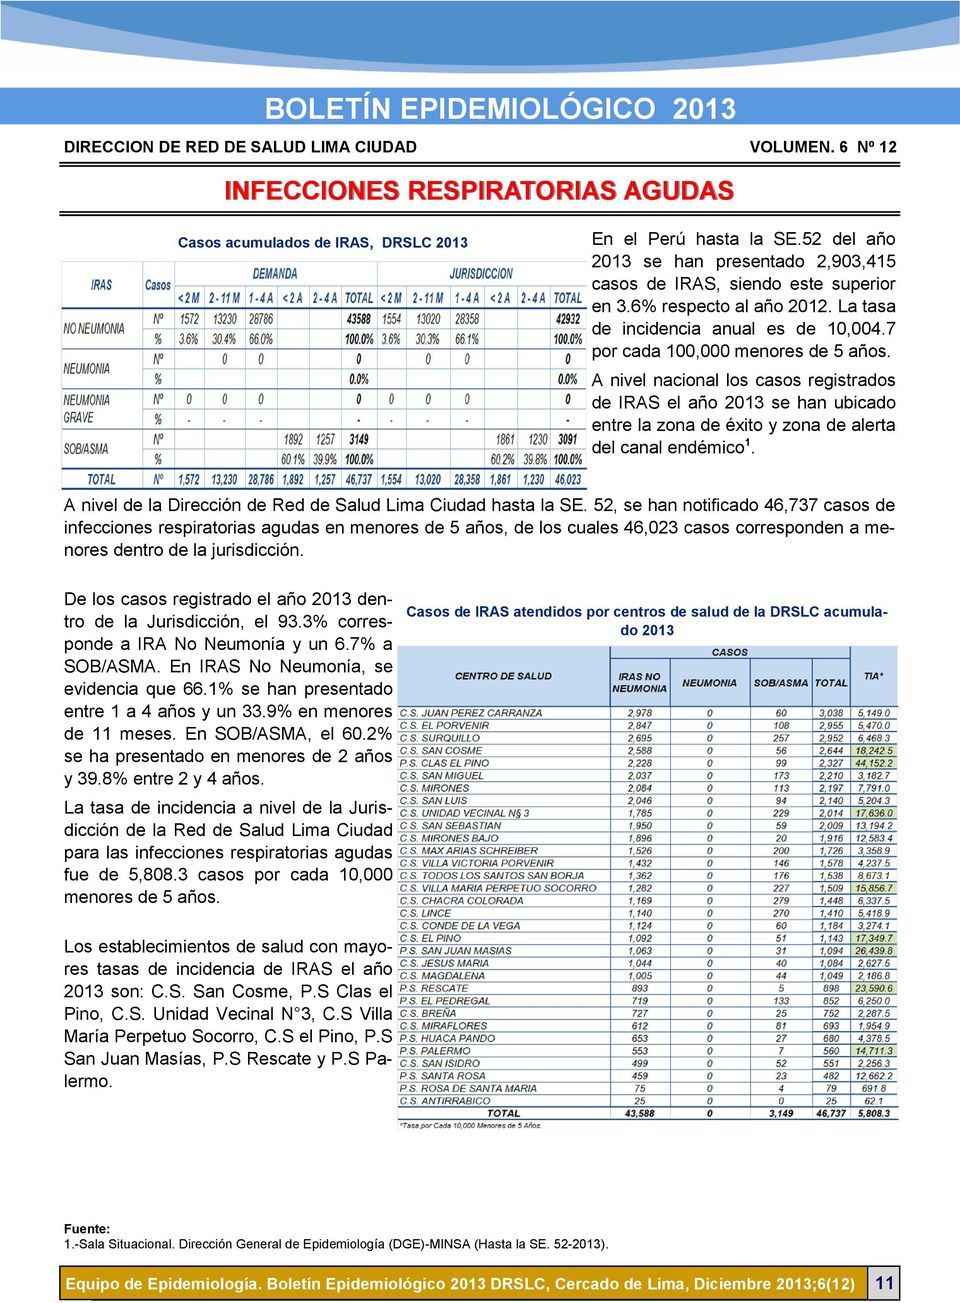 A nivel nacional los casos registrados de IRAS el año 2013 se han ubicado entre la zona de éxito y zona de alerta del canal endémico 1. A nivel de la Dirección de Red de Salud Lima Ciudad hasta la SE.